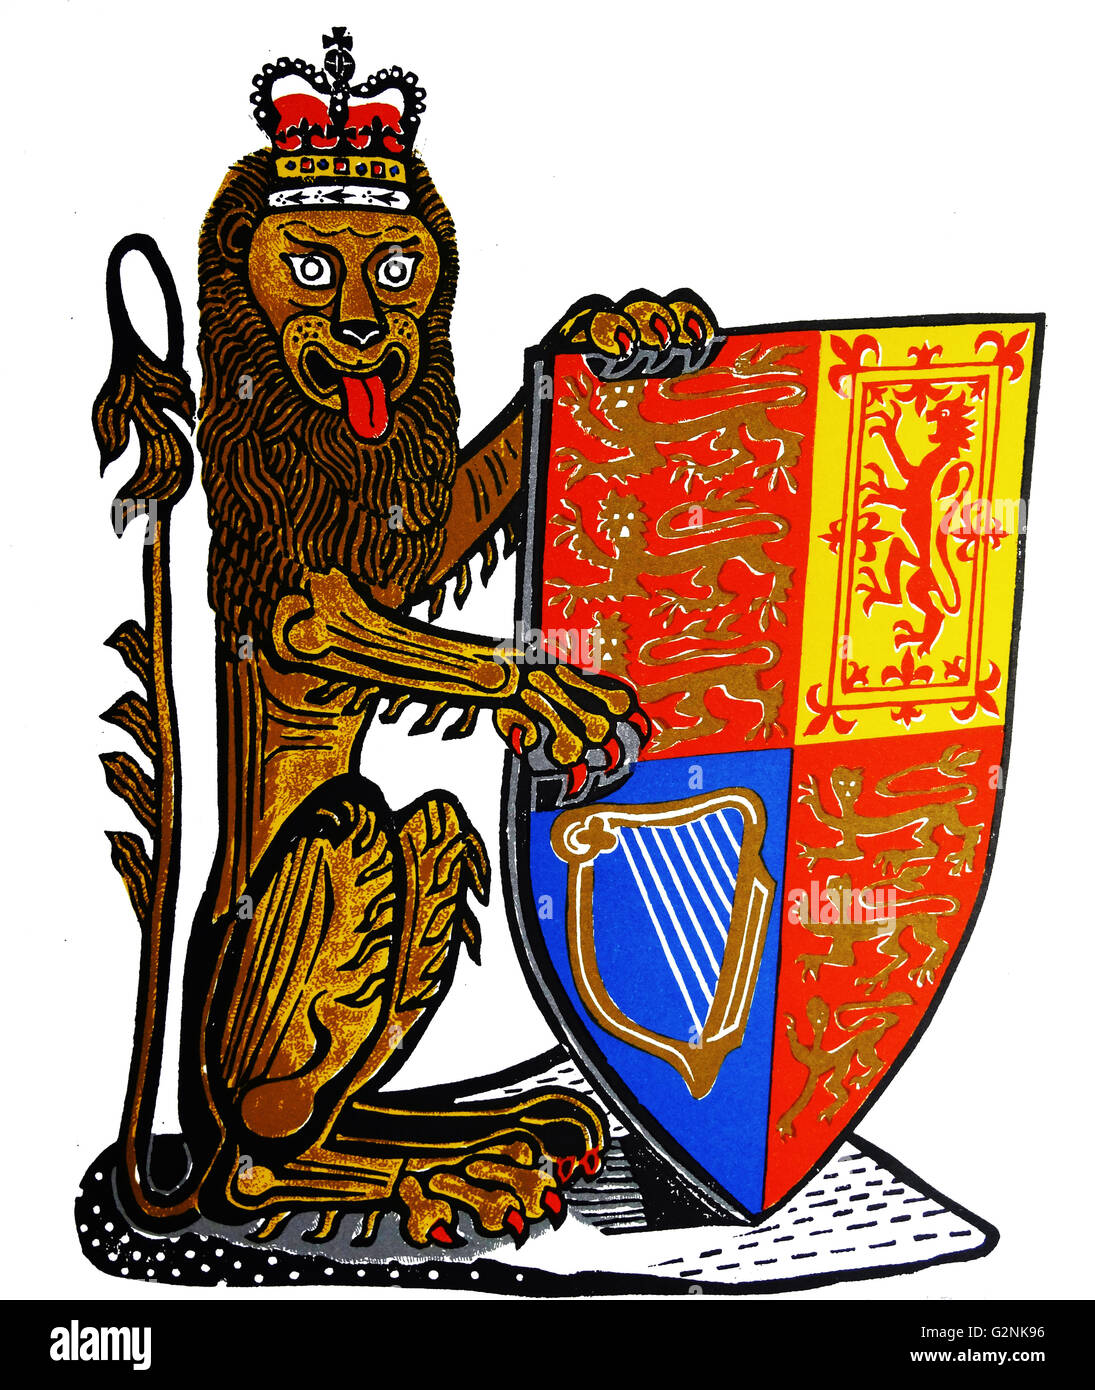 Le lion héraldique de l'Angleterre. La première et quatrième quadrants représentent l'Angleterre et contiennent trois lions d'or passant sur un champ rouge ; le deuxième quadrant représente l'Écosse contient un lion rouge sur un champ d'or ; le troisième quadrant représente l'Irlande et la harpe d'or contient de l'Irlande sur un champ bleu. Dessiné par Edward Bawden CEPB RA (1903 - 1989) était un artiste graphique. Banque D'Images